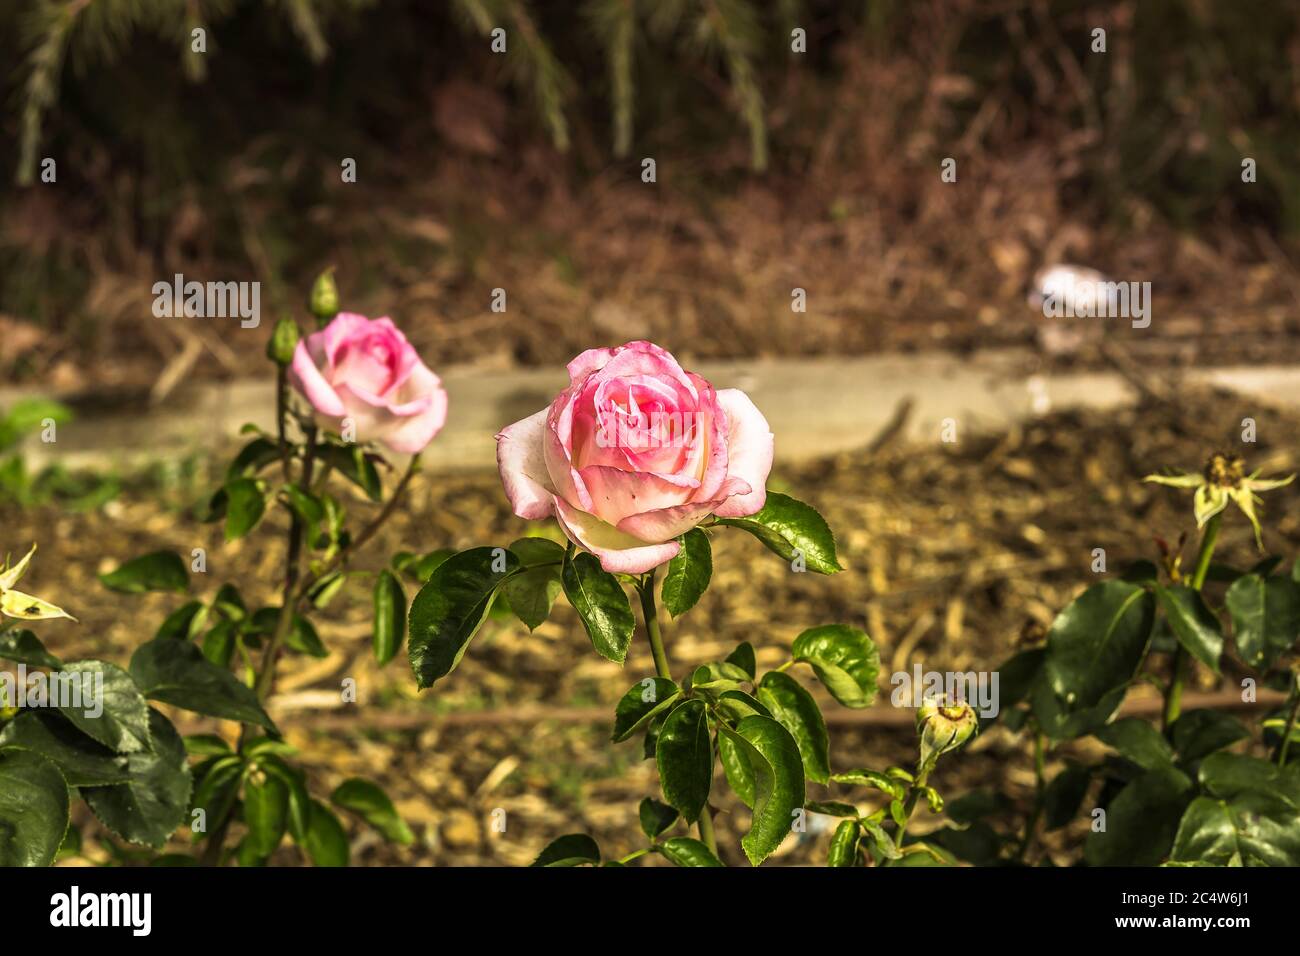 vue sur le rosier avec fleurs aux pétales roses sur les feuilles vertes Banque D'Images